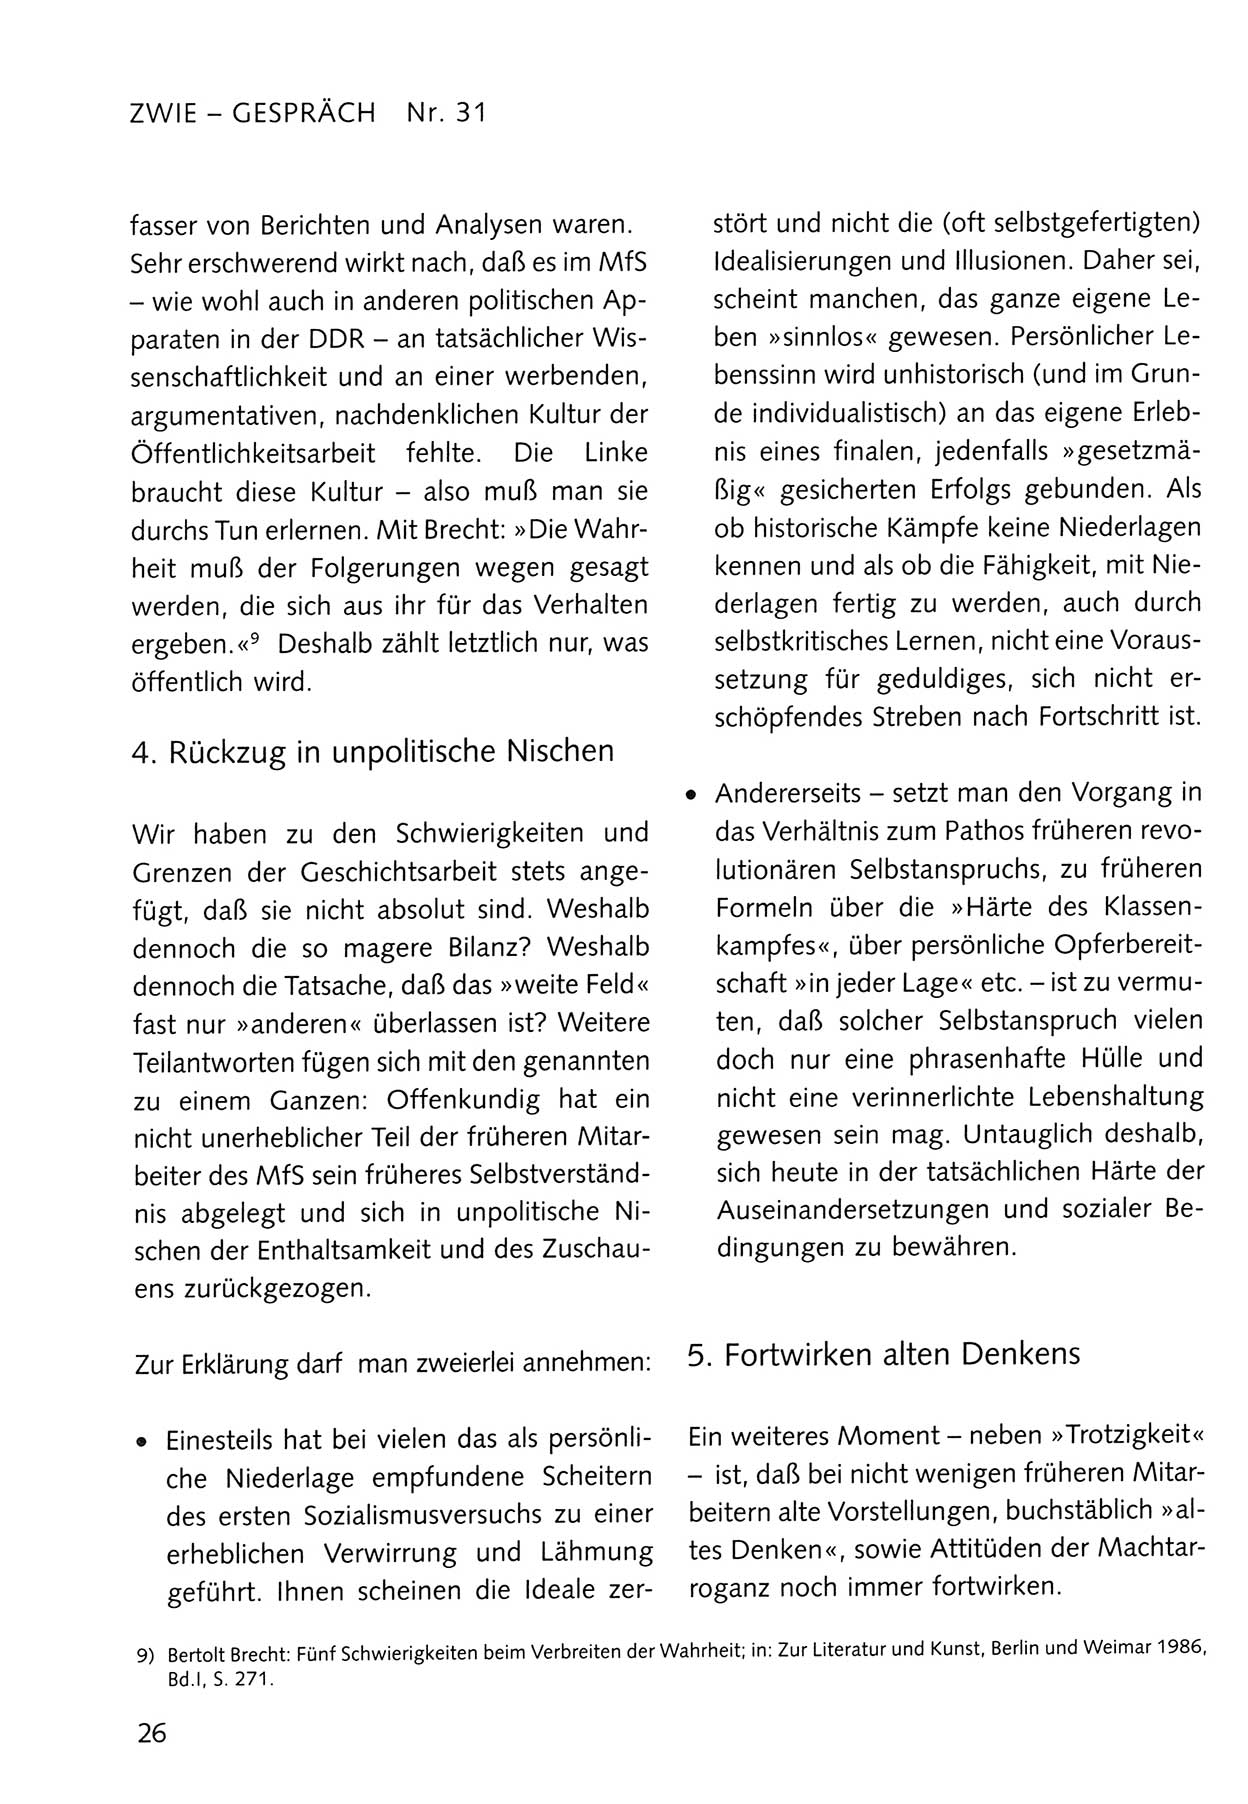 Zwie-Gespräch, Beiträge zum Umgang mit der Staatssicherheits-Vergangenheit [Deutsche Demokratische Republik (DDR)], Ausgabe Nr. 31, Berlin 1995, Seite 26 (Zwie-Gespr. Ausg. 31 1995, S. 26)